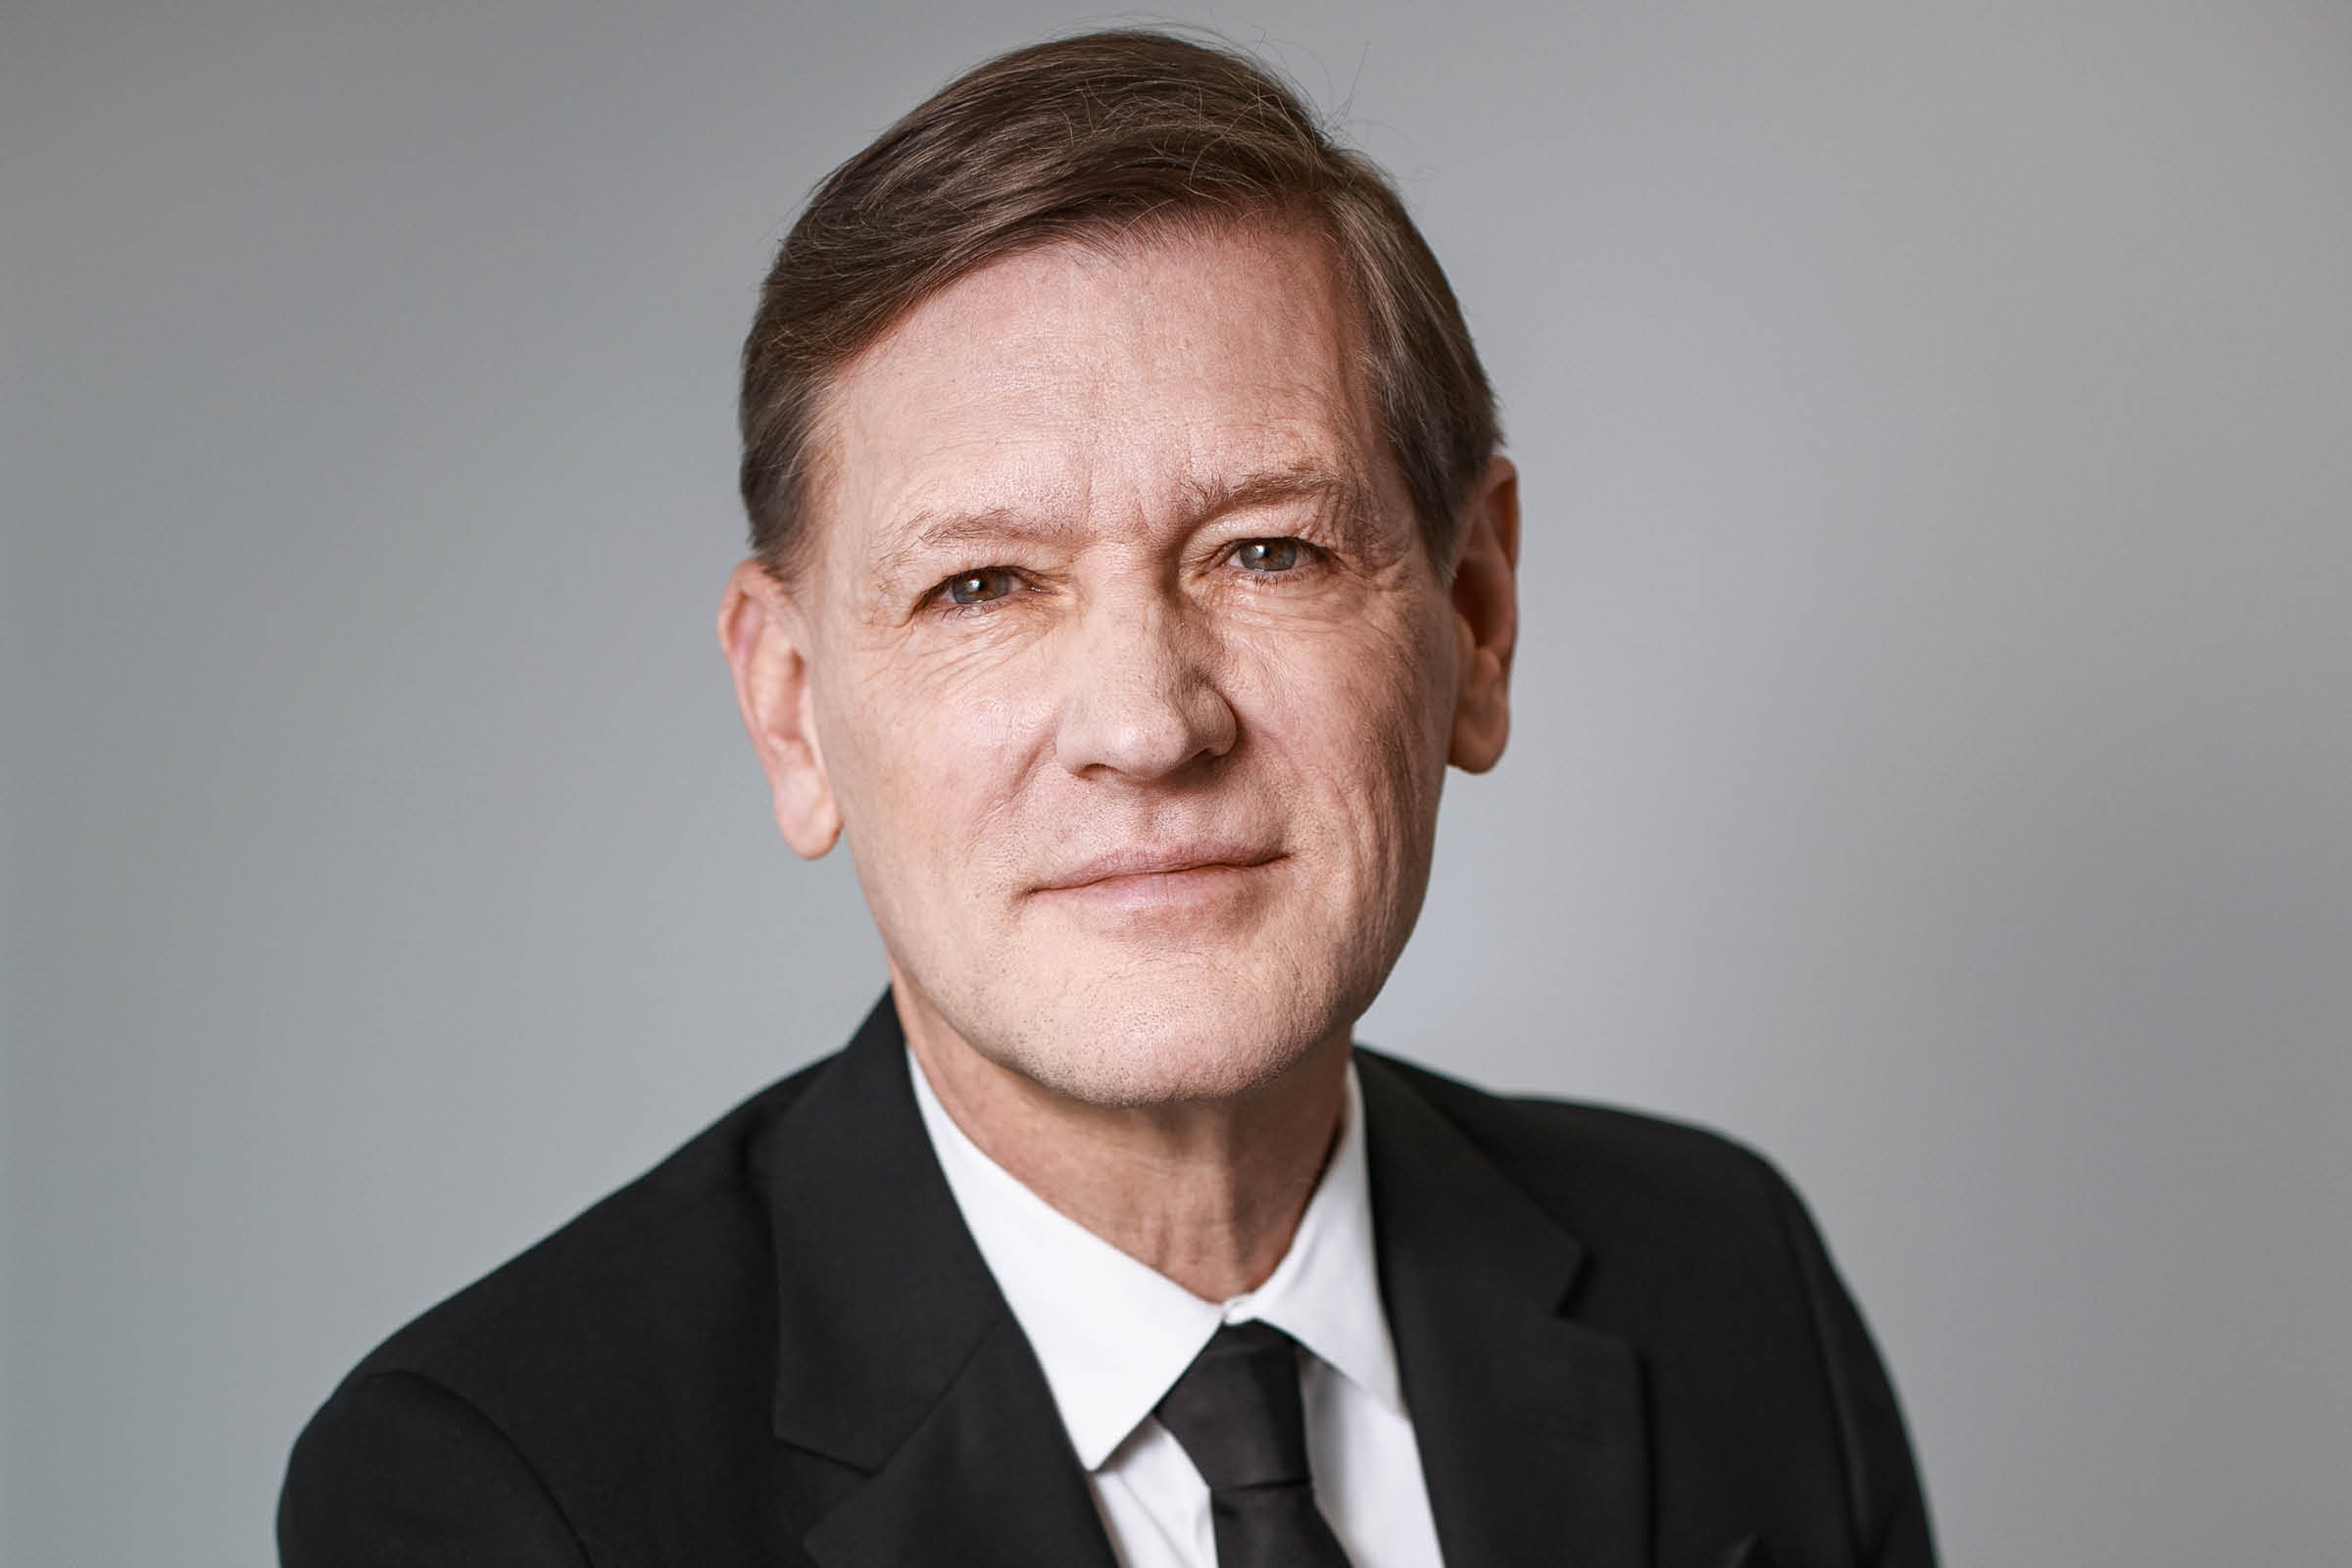 Flemming Ørnskov, CEO of Galderma